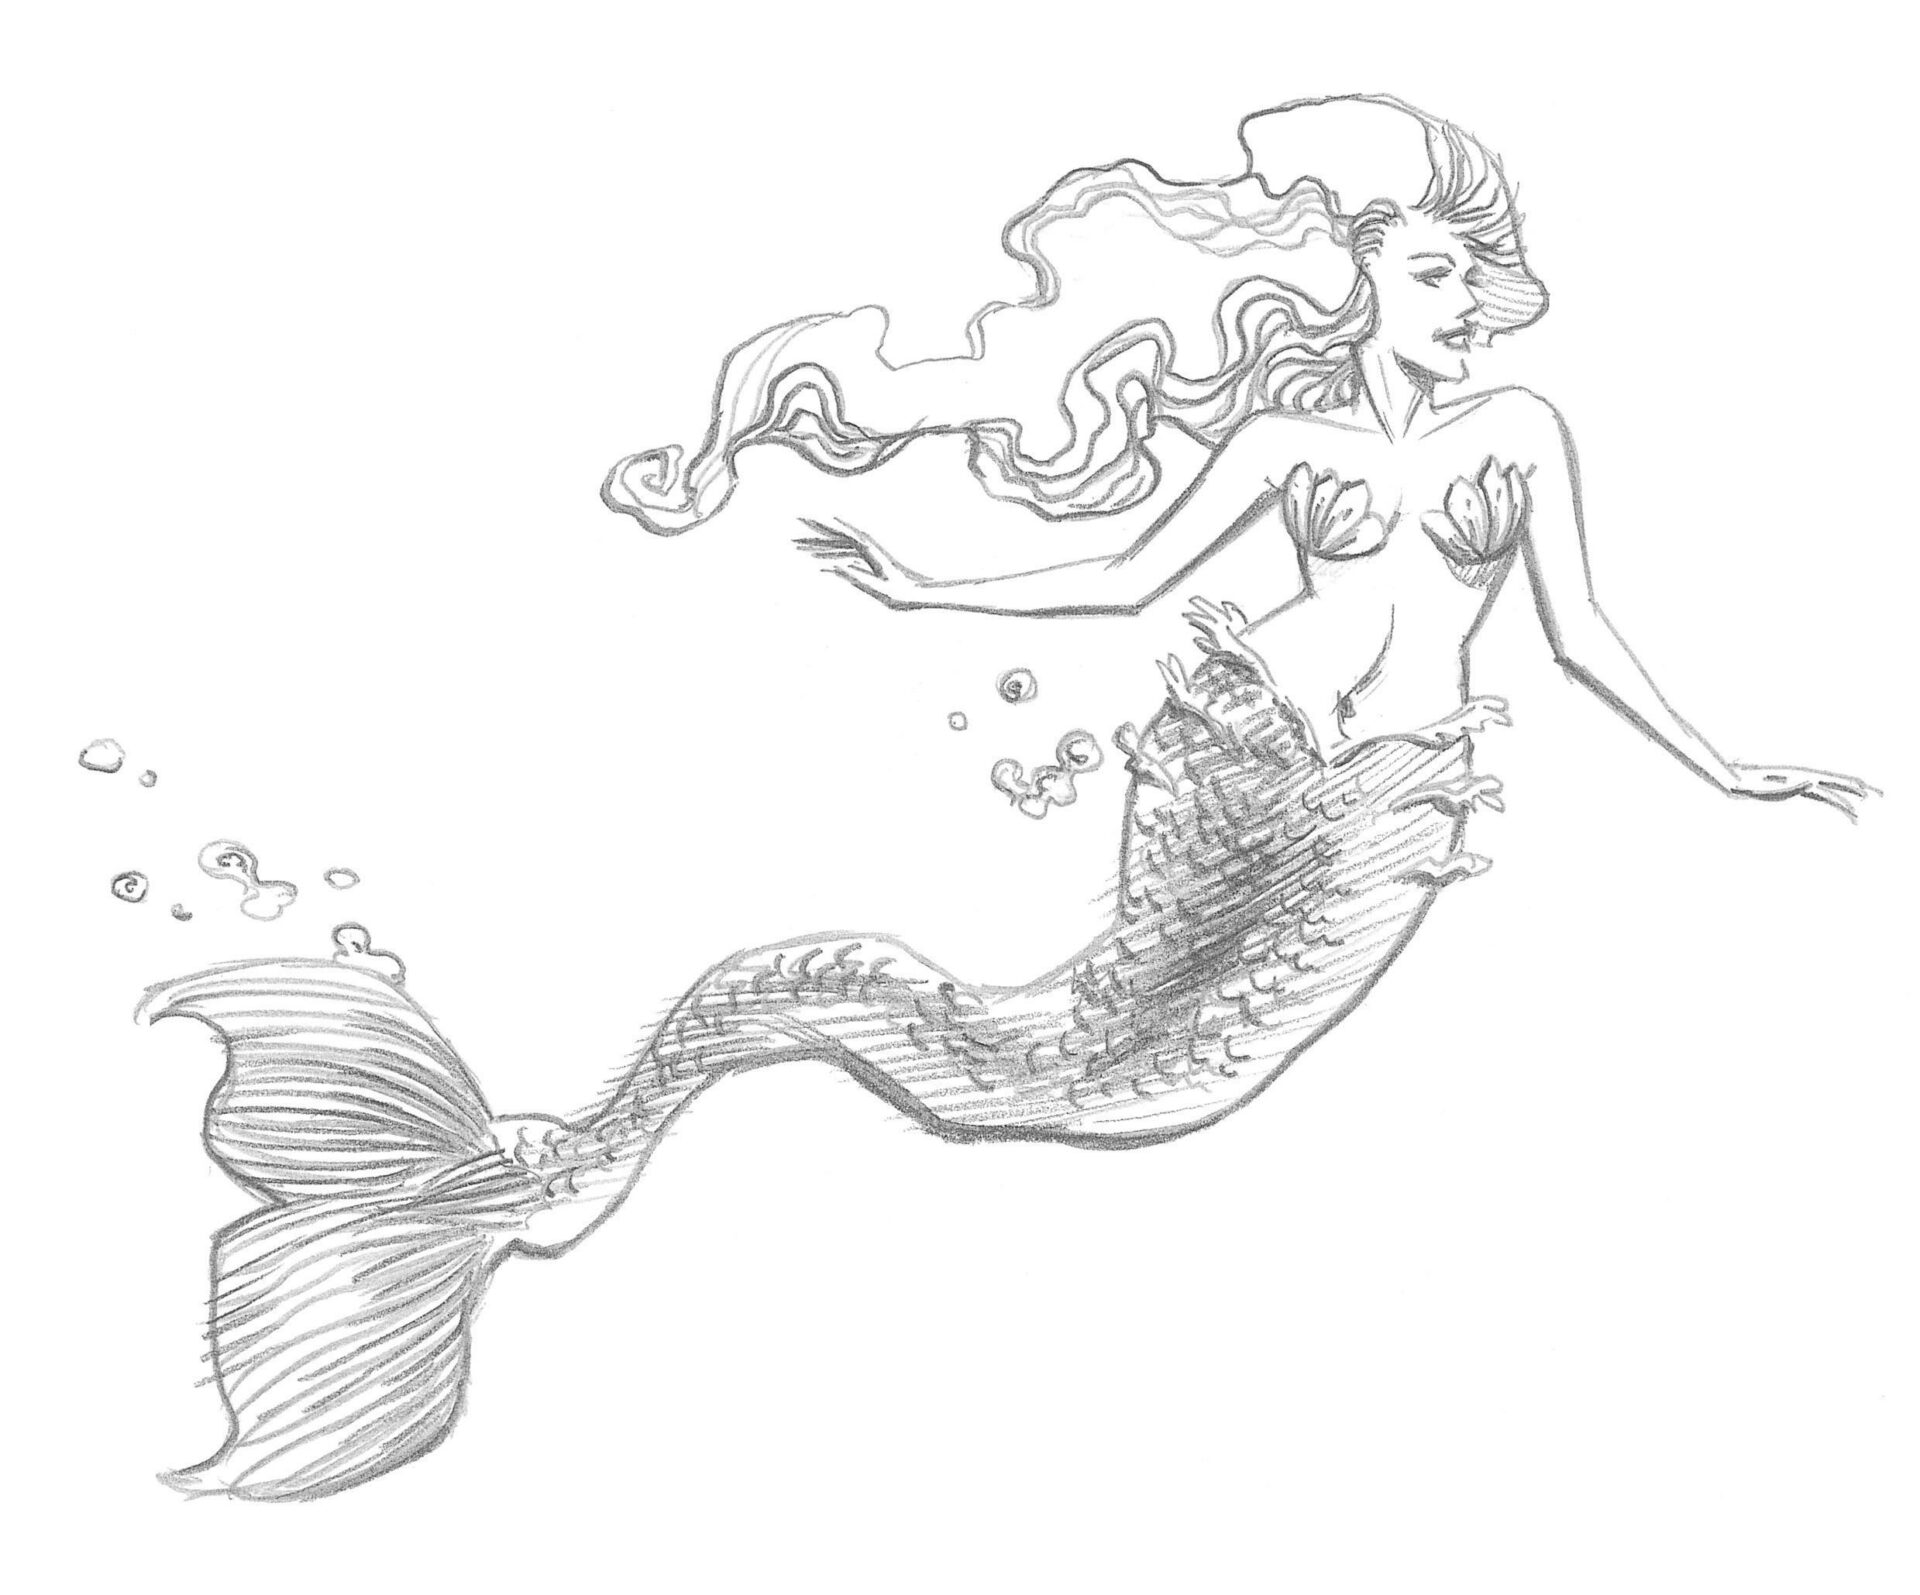 A simple mermaid drawing 3 by HellieZeKitten on DeviantArt